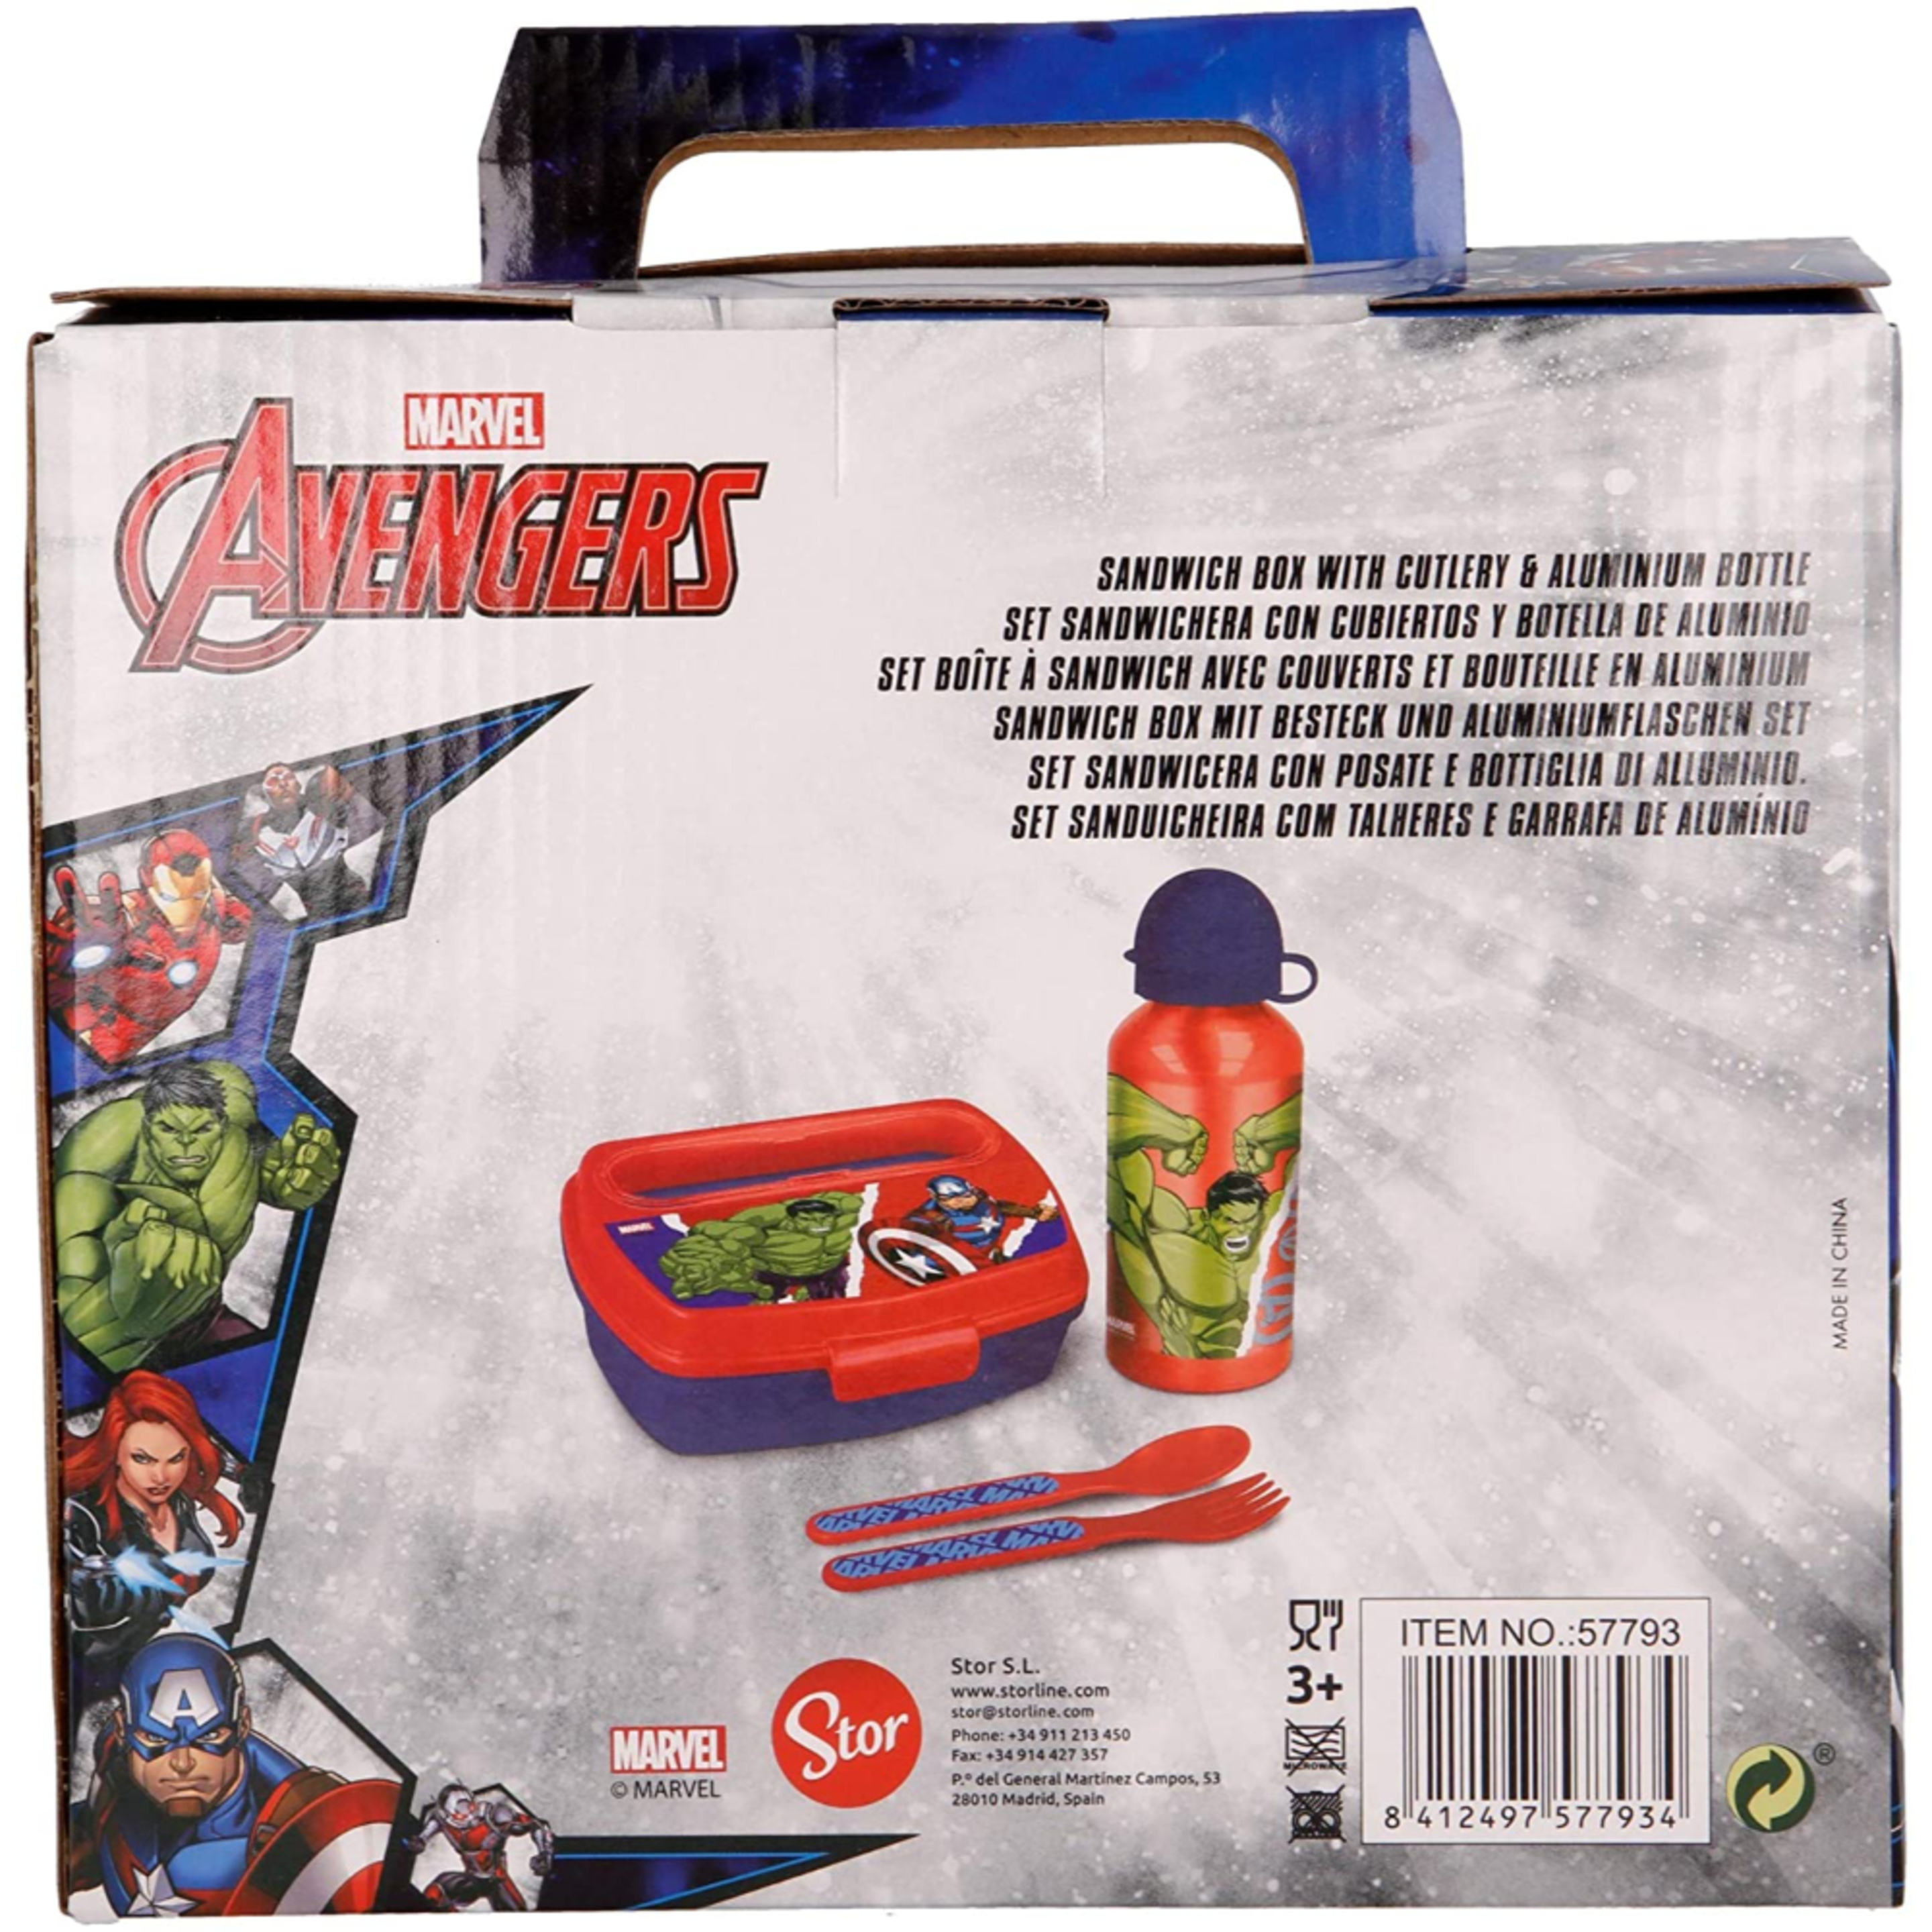 Sandwicha Avengers.